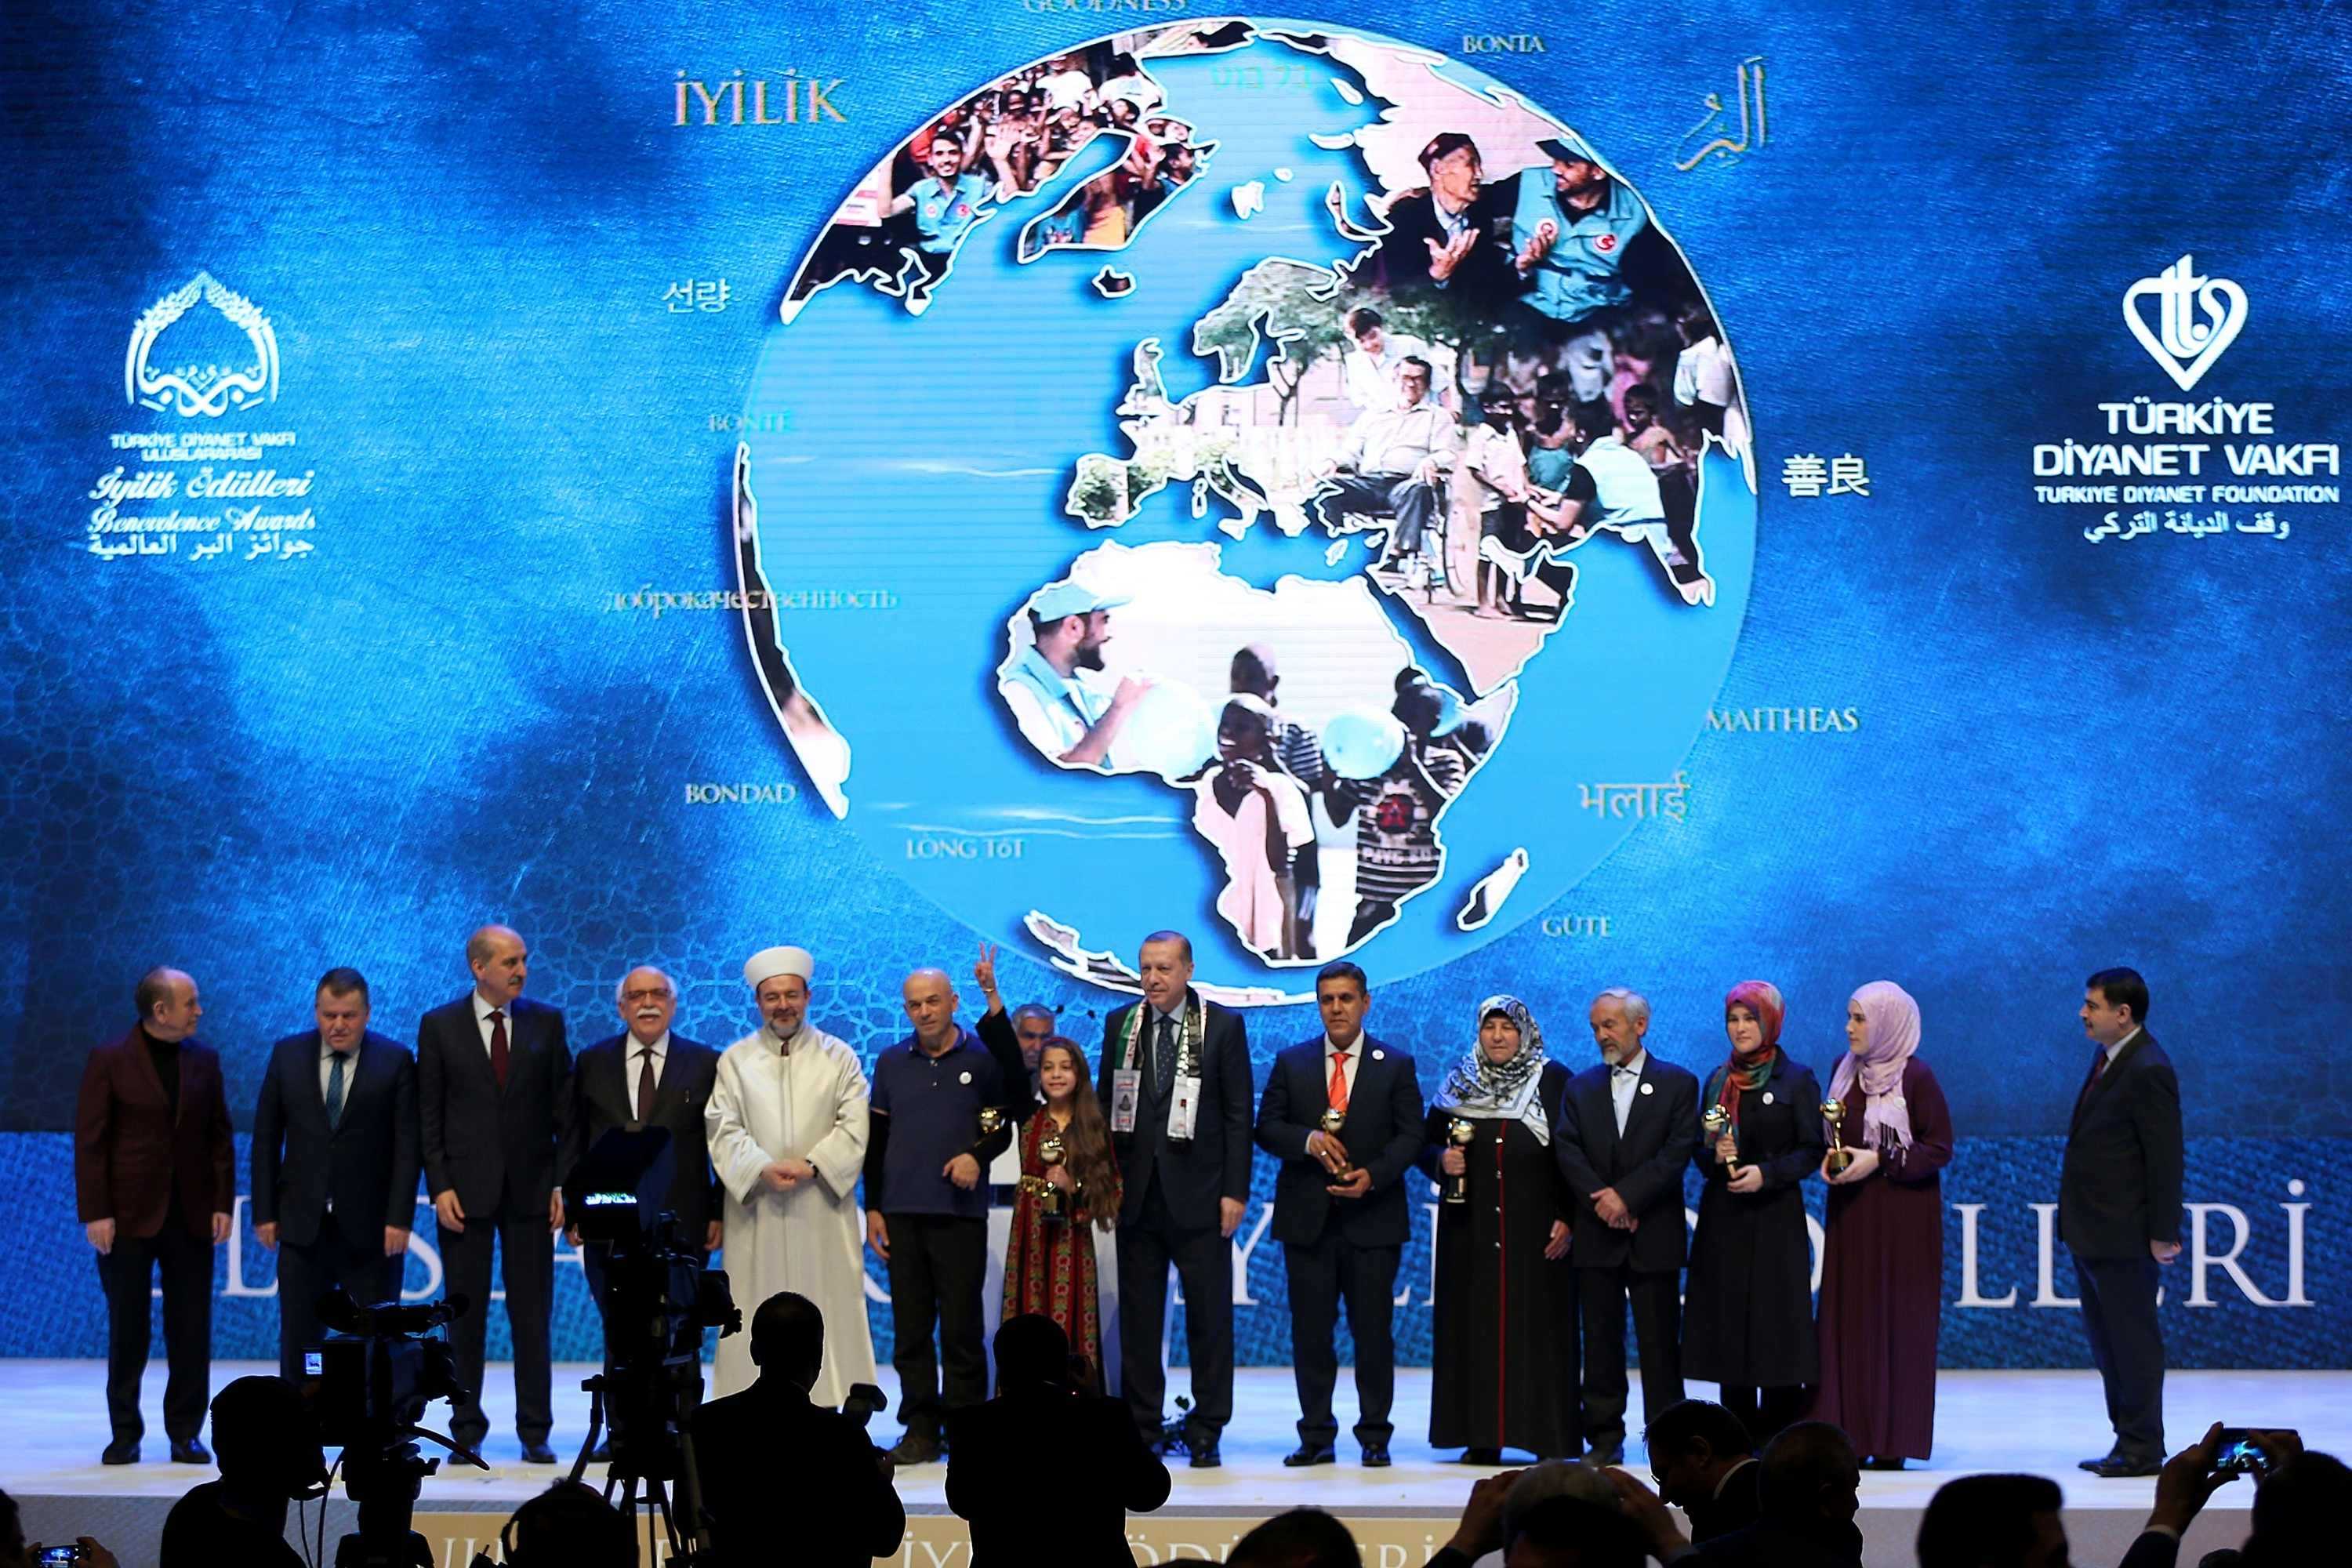 İyilikhane Won 2017 International Benevolence Award!